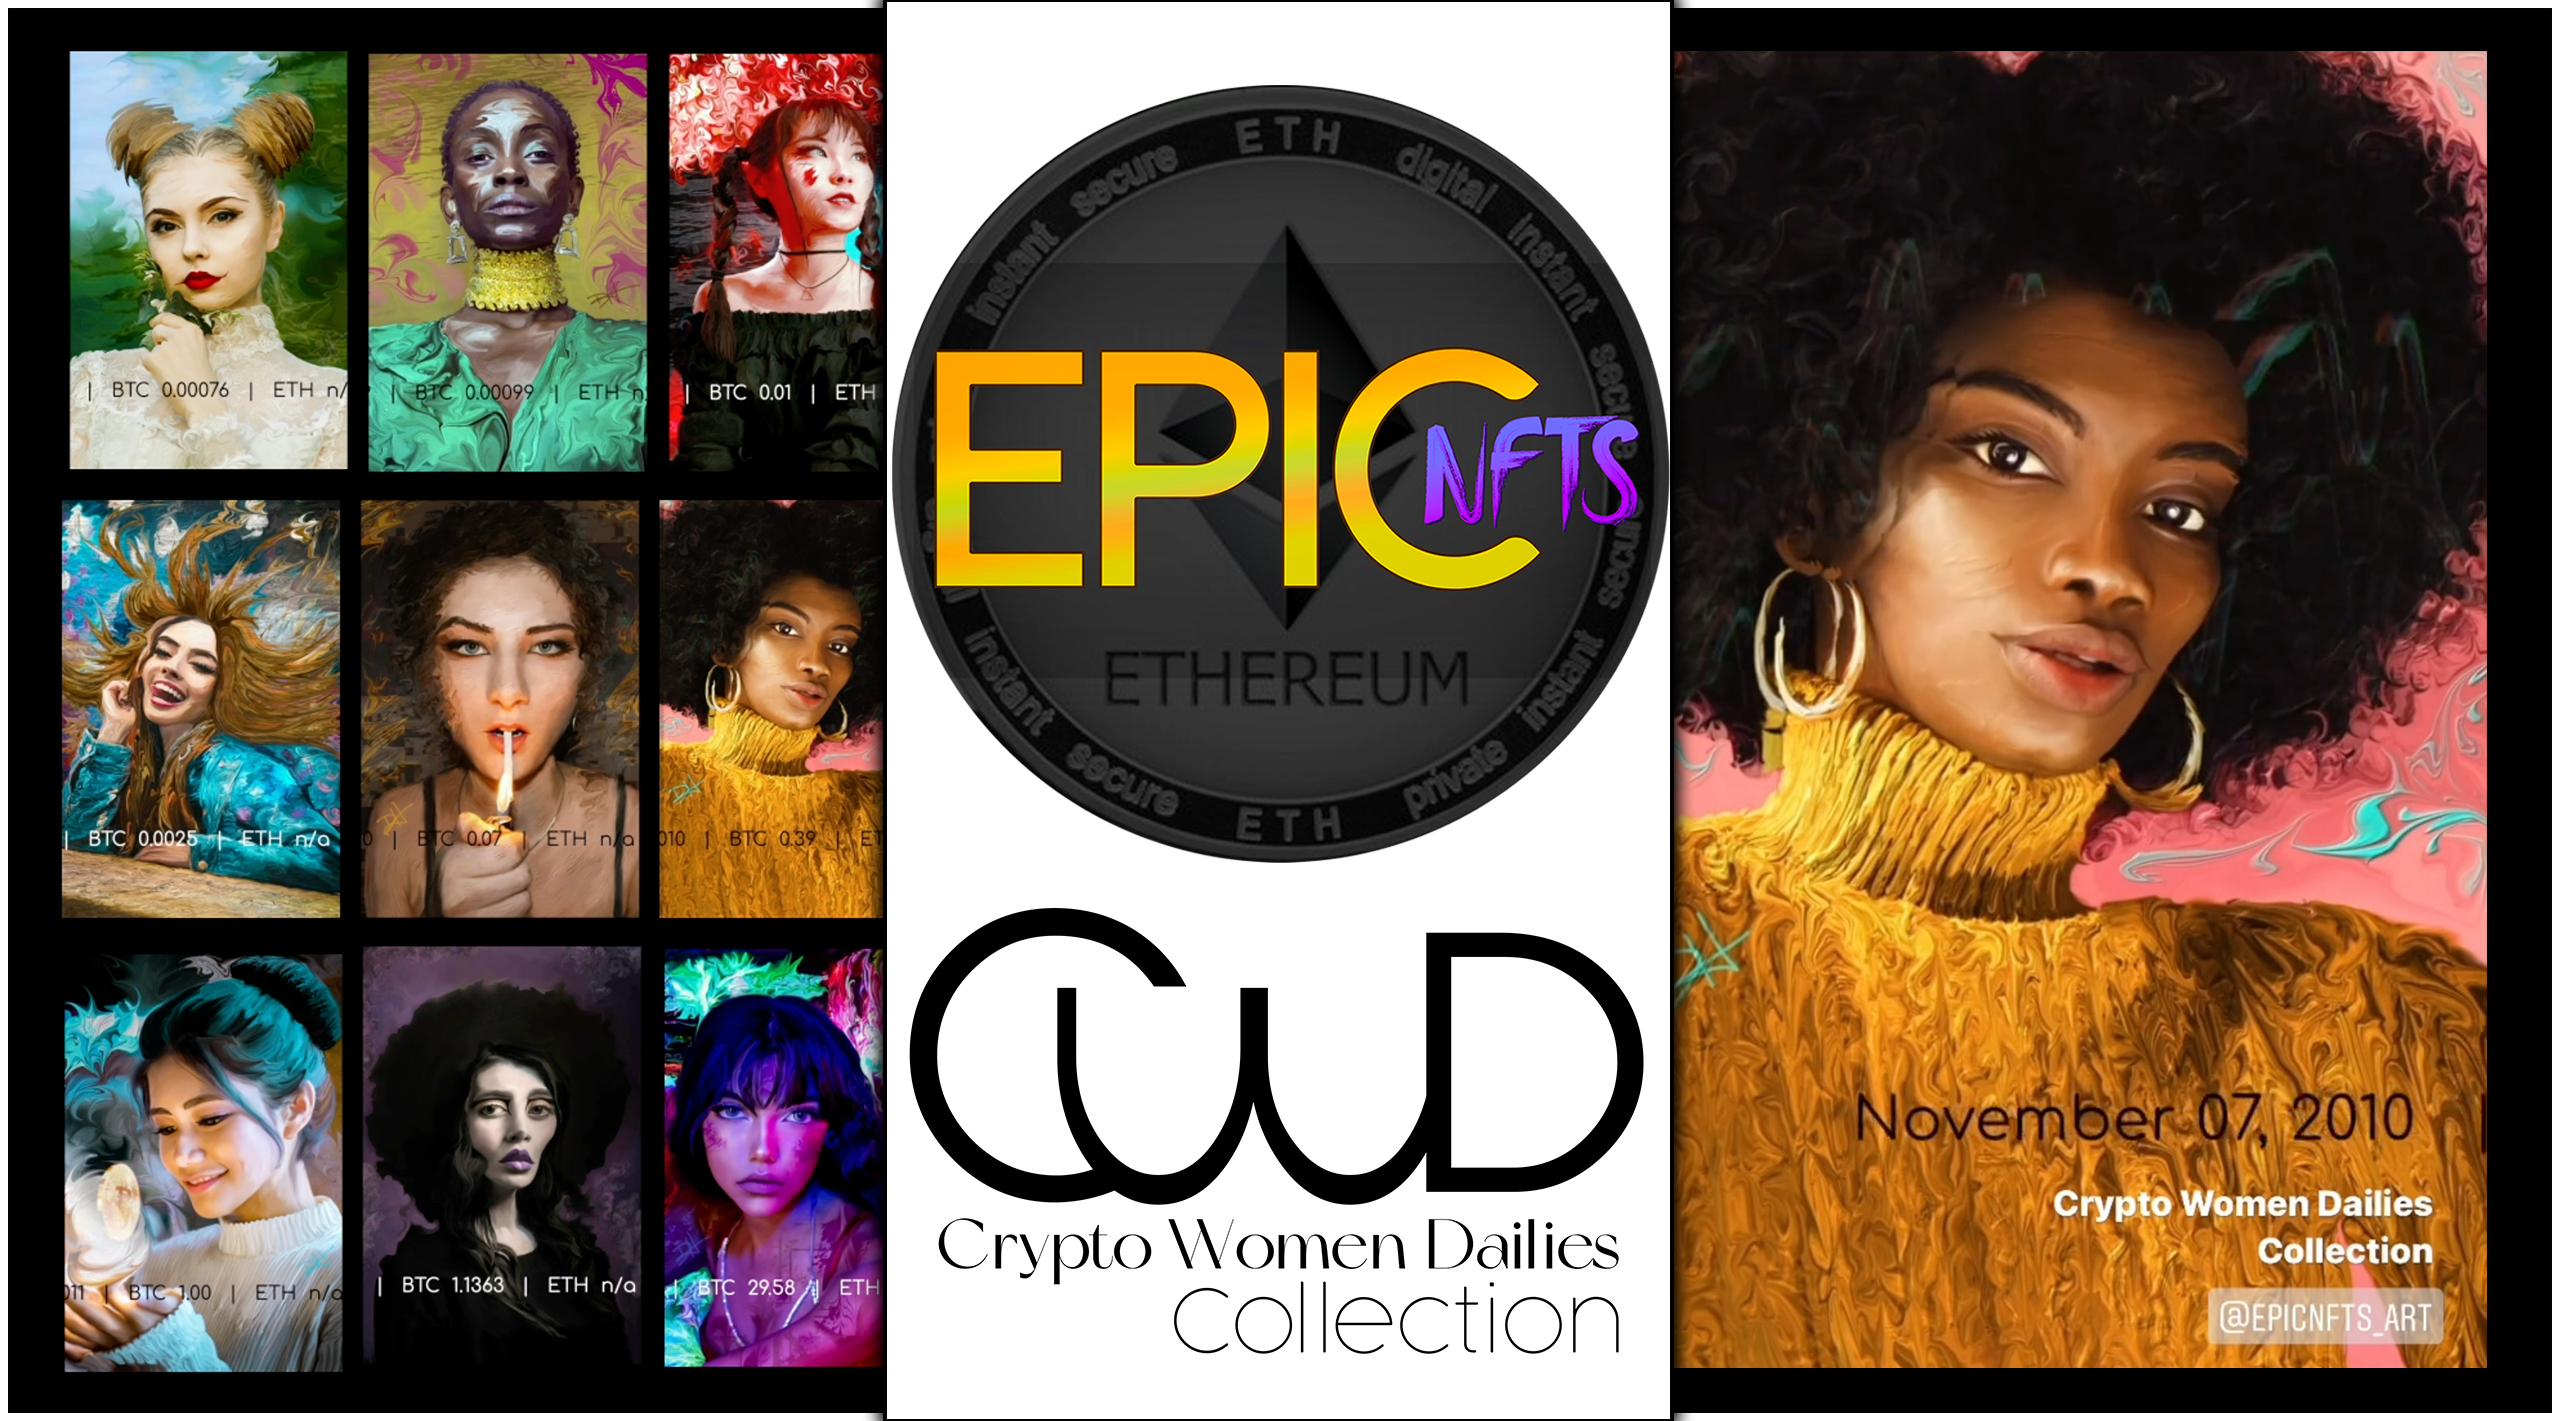 Crypto Women Dailies  |  2010 November 7 – Bitcoin Catapults to 39 Cents